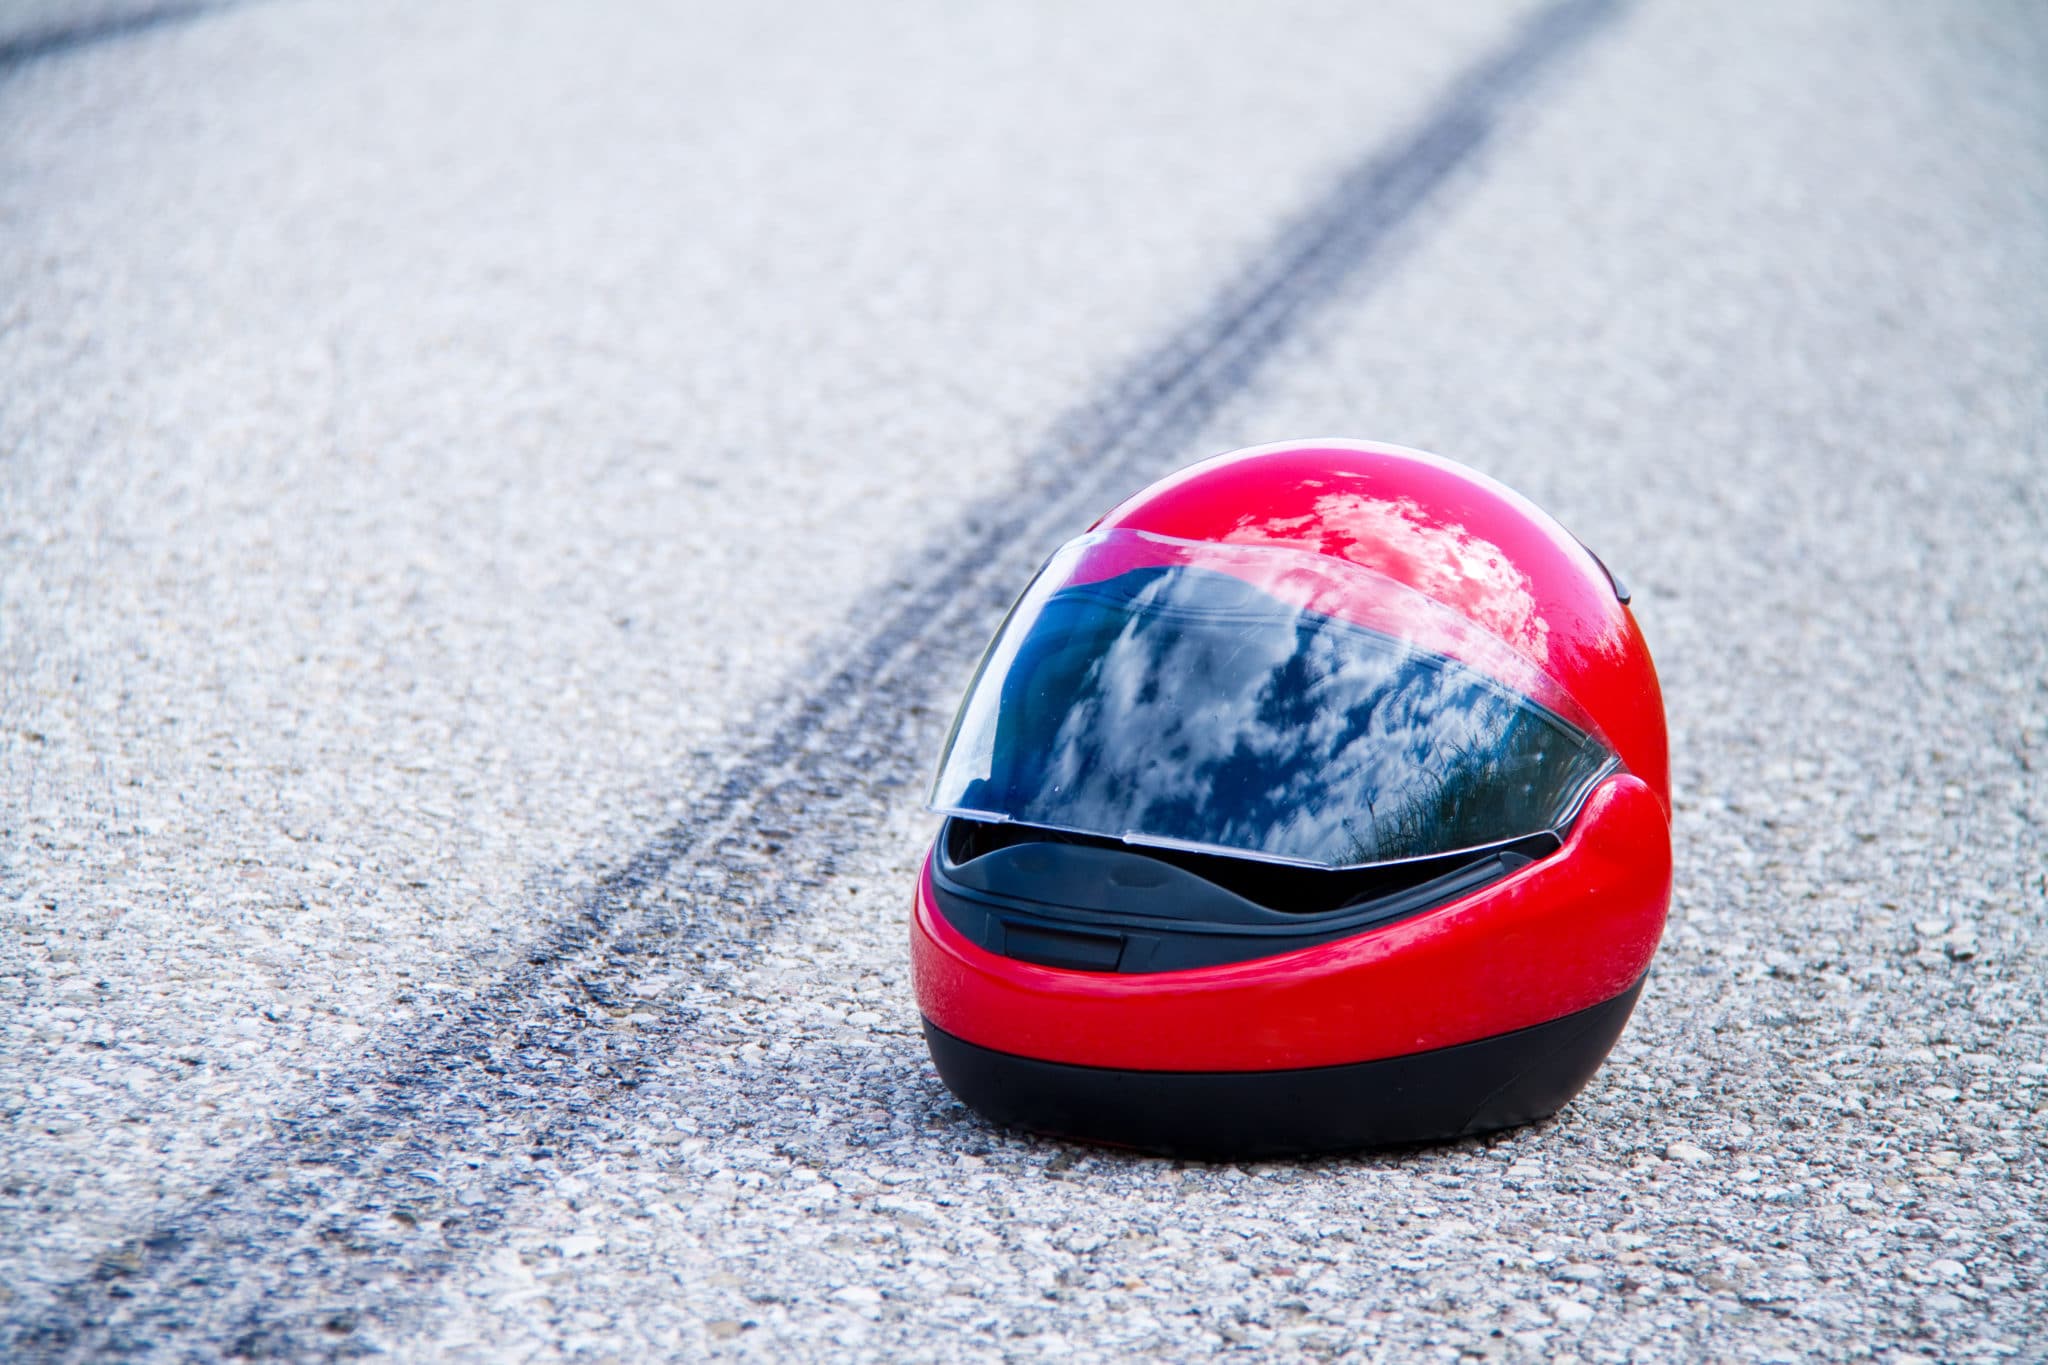 motorcycle helmet in accident scene